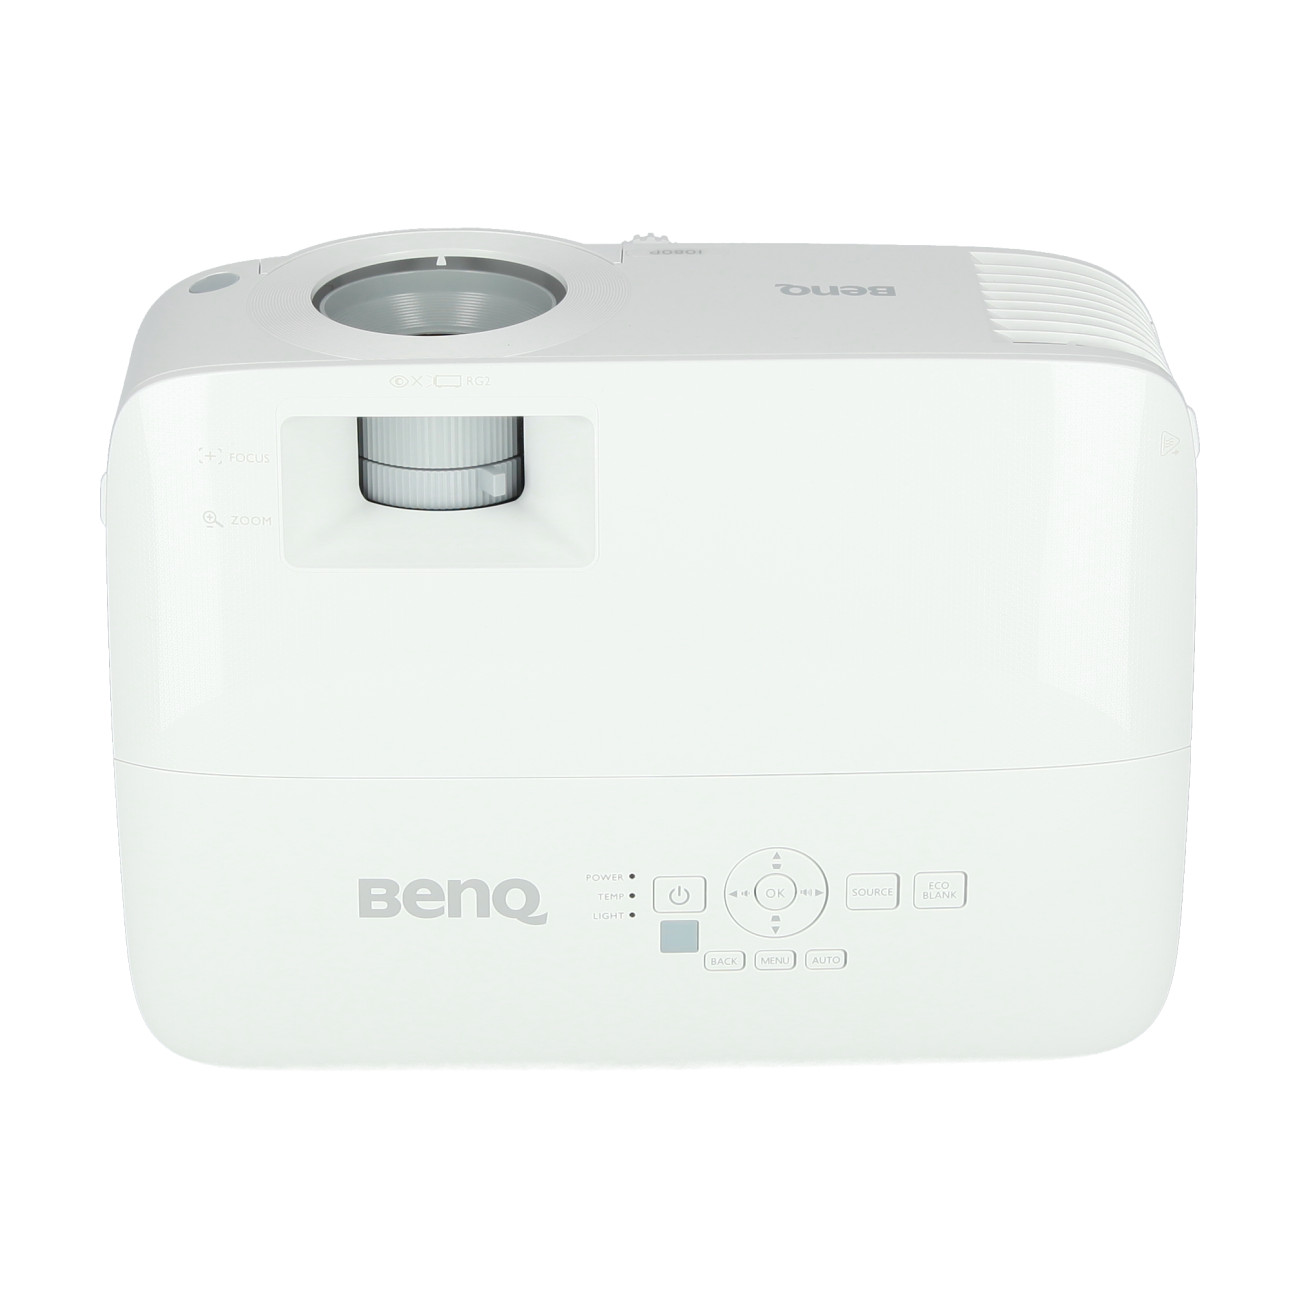 Benq-MH560-Beamer-1920-x-1080-Full-HD-3-800-ANSI-Lumen